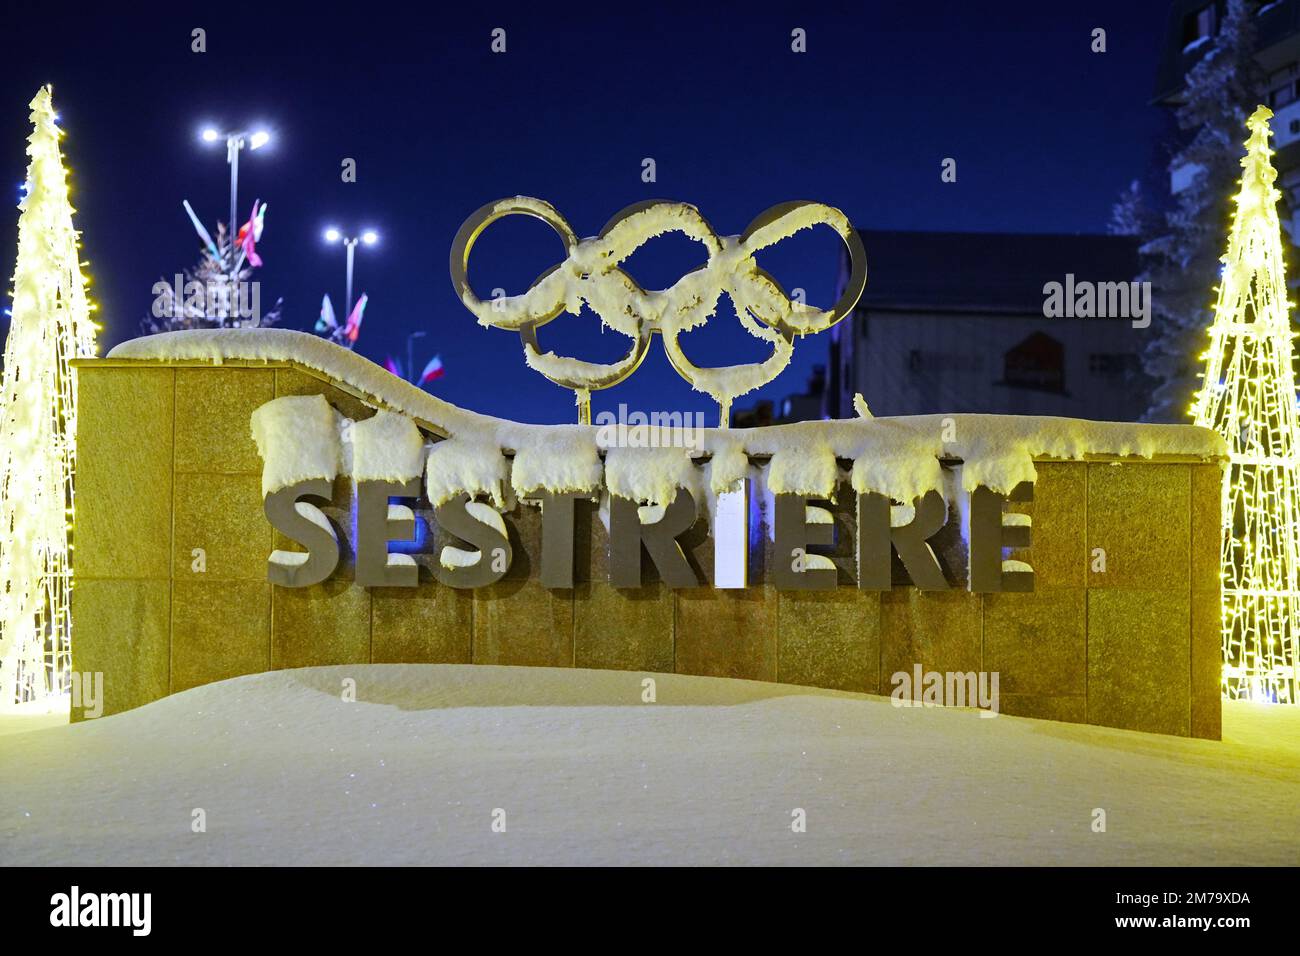 Zeichen des alpinen Dorfes Sestriere, in dem die Olympischen Winterspiele 2006 stattfanden. Sestriere, Italien - 2022. Dezember Stockfoto